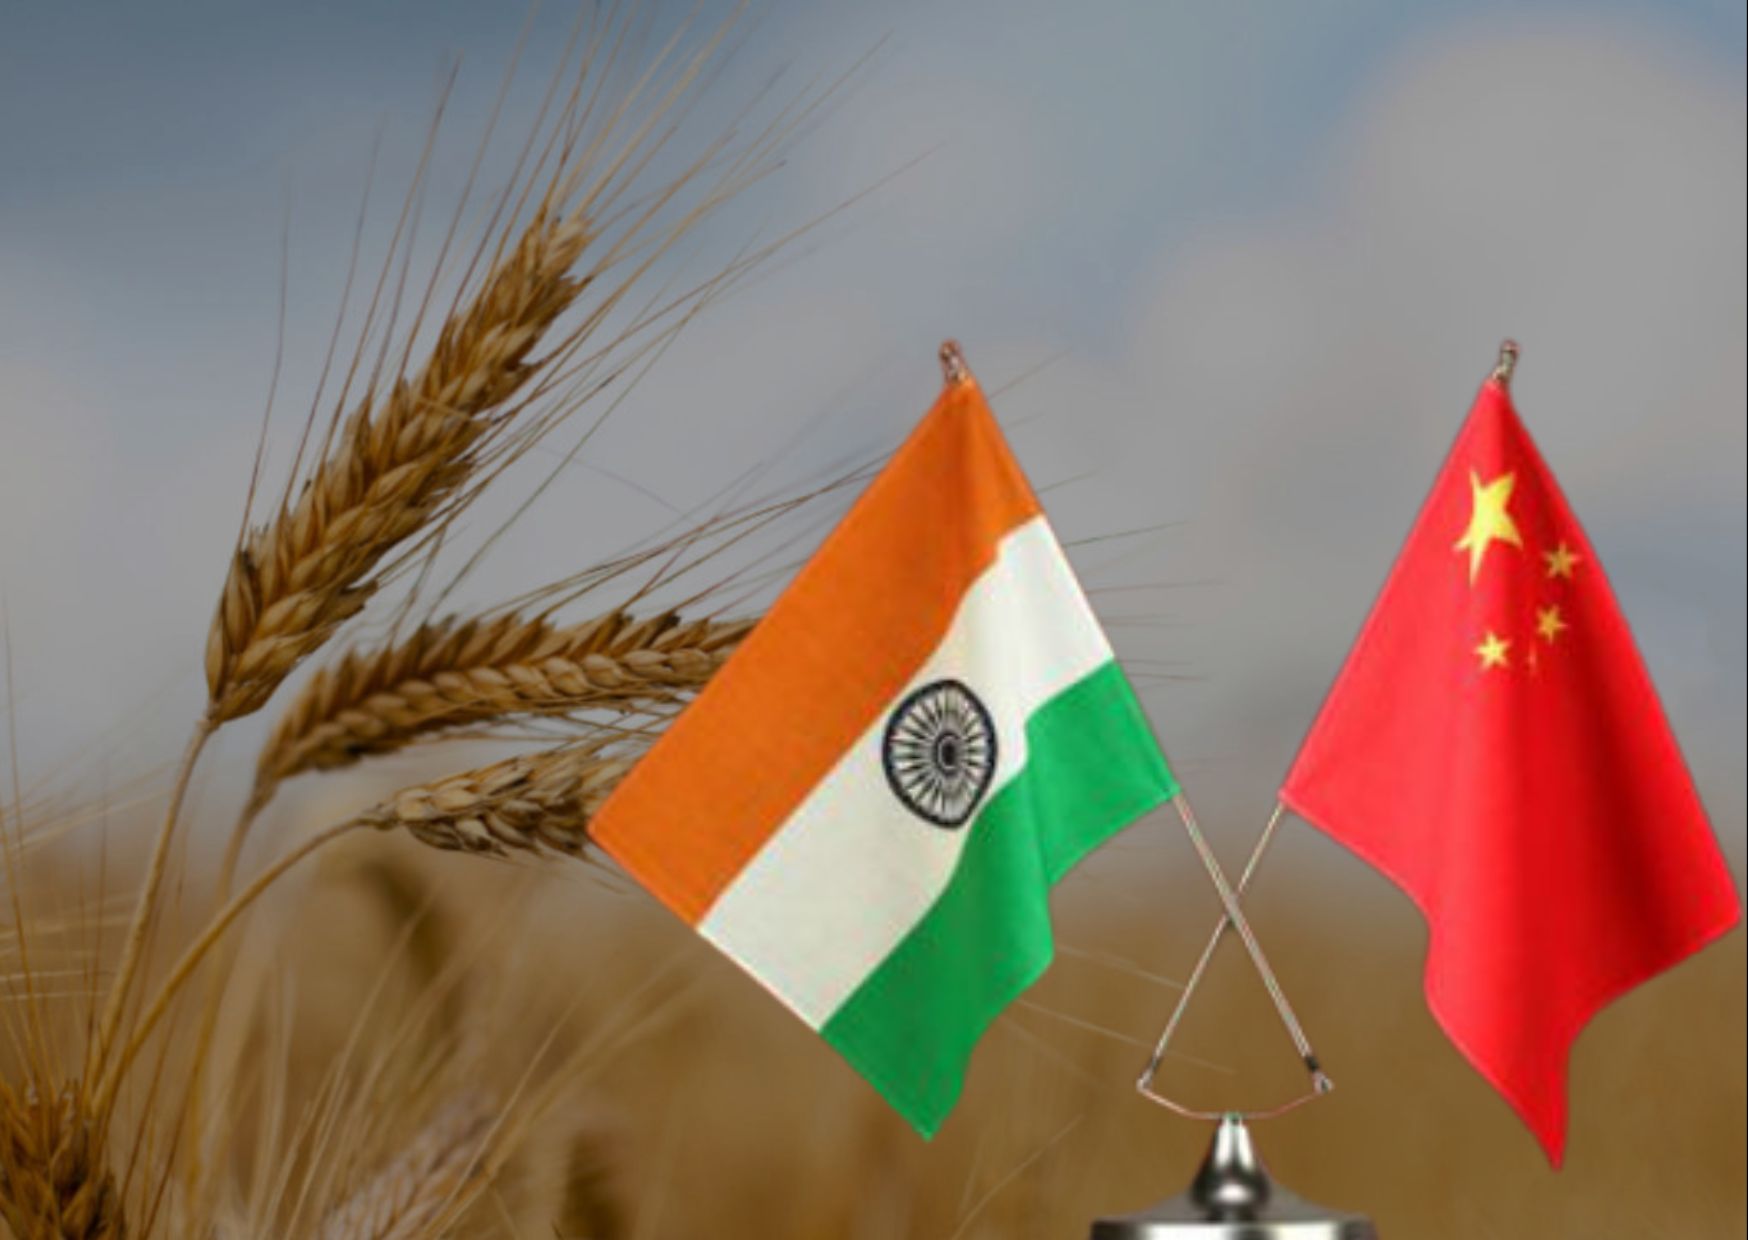 China Backs India's Wheat Export Ban at WTO